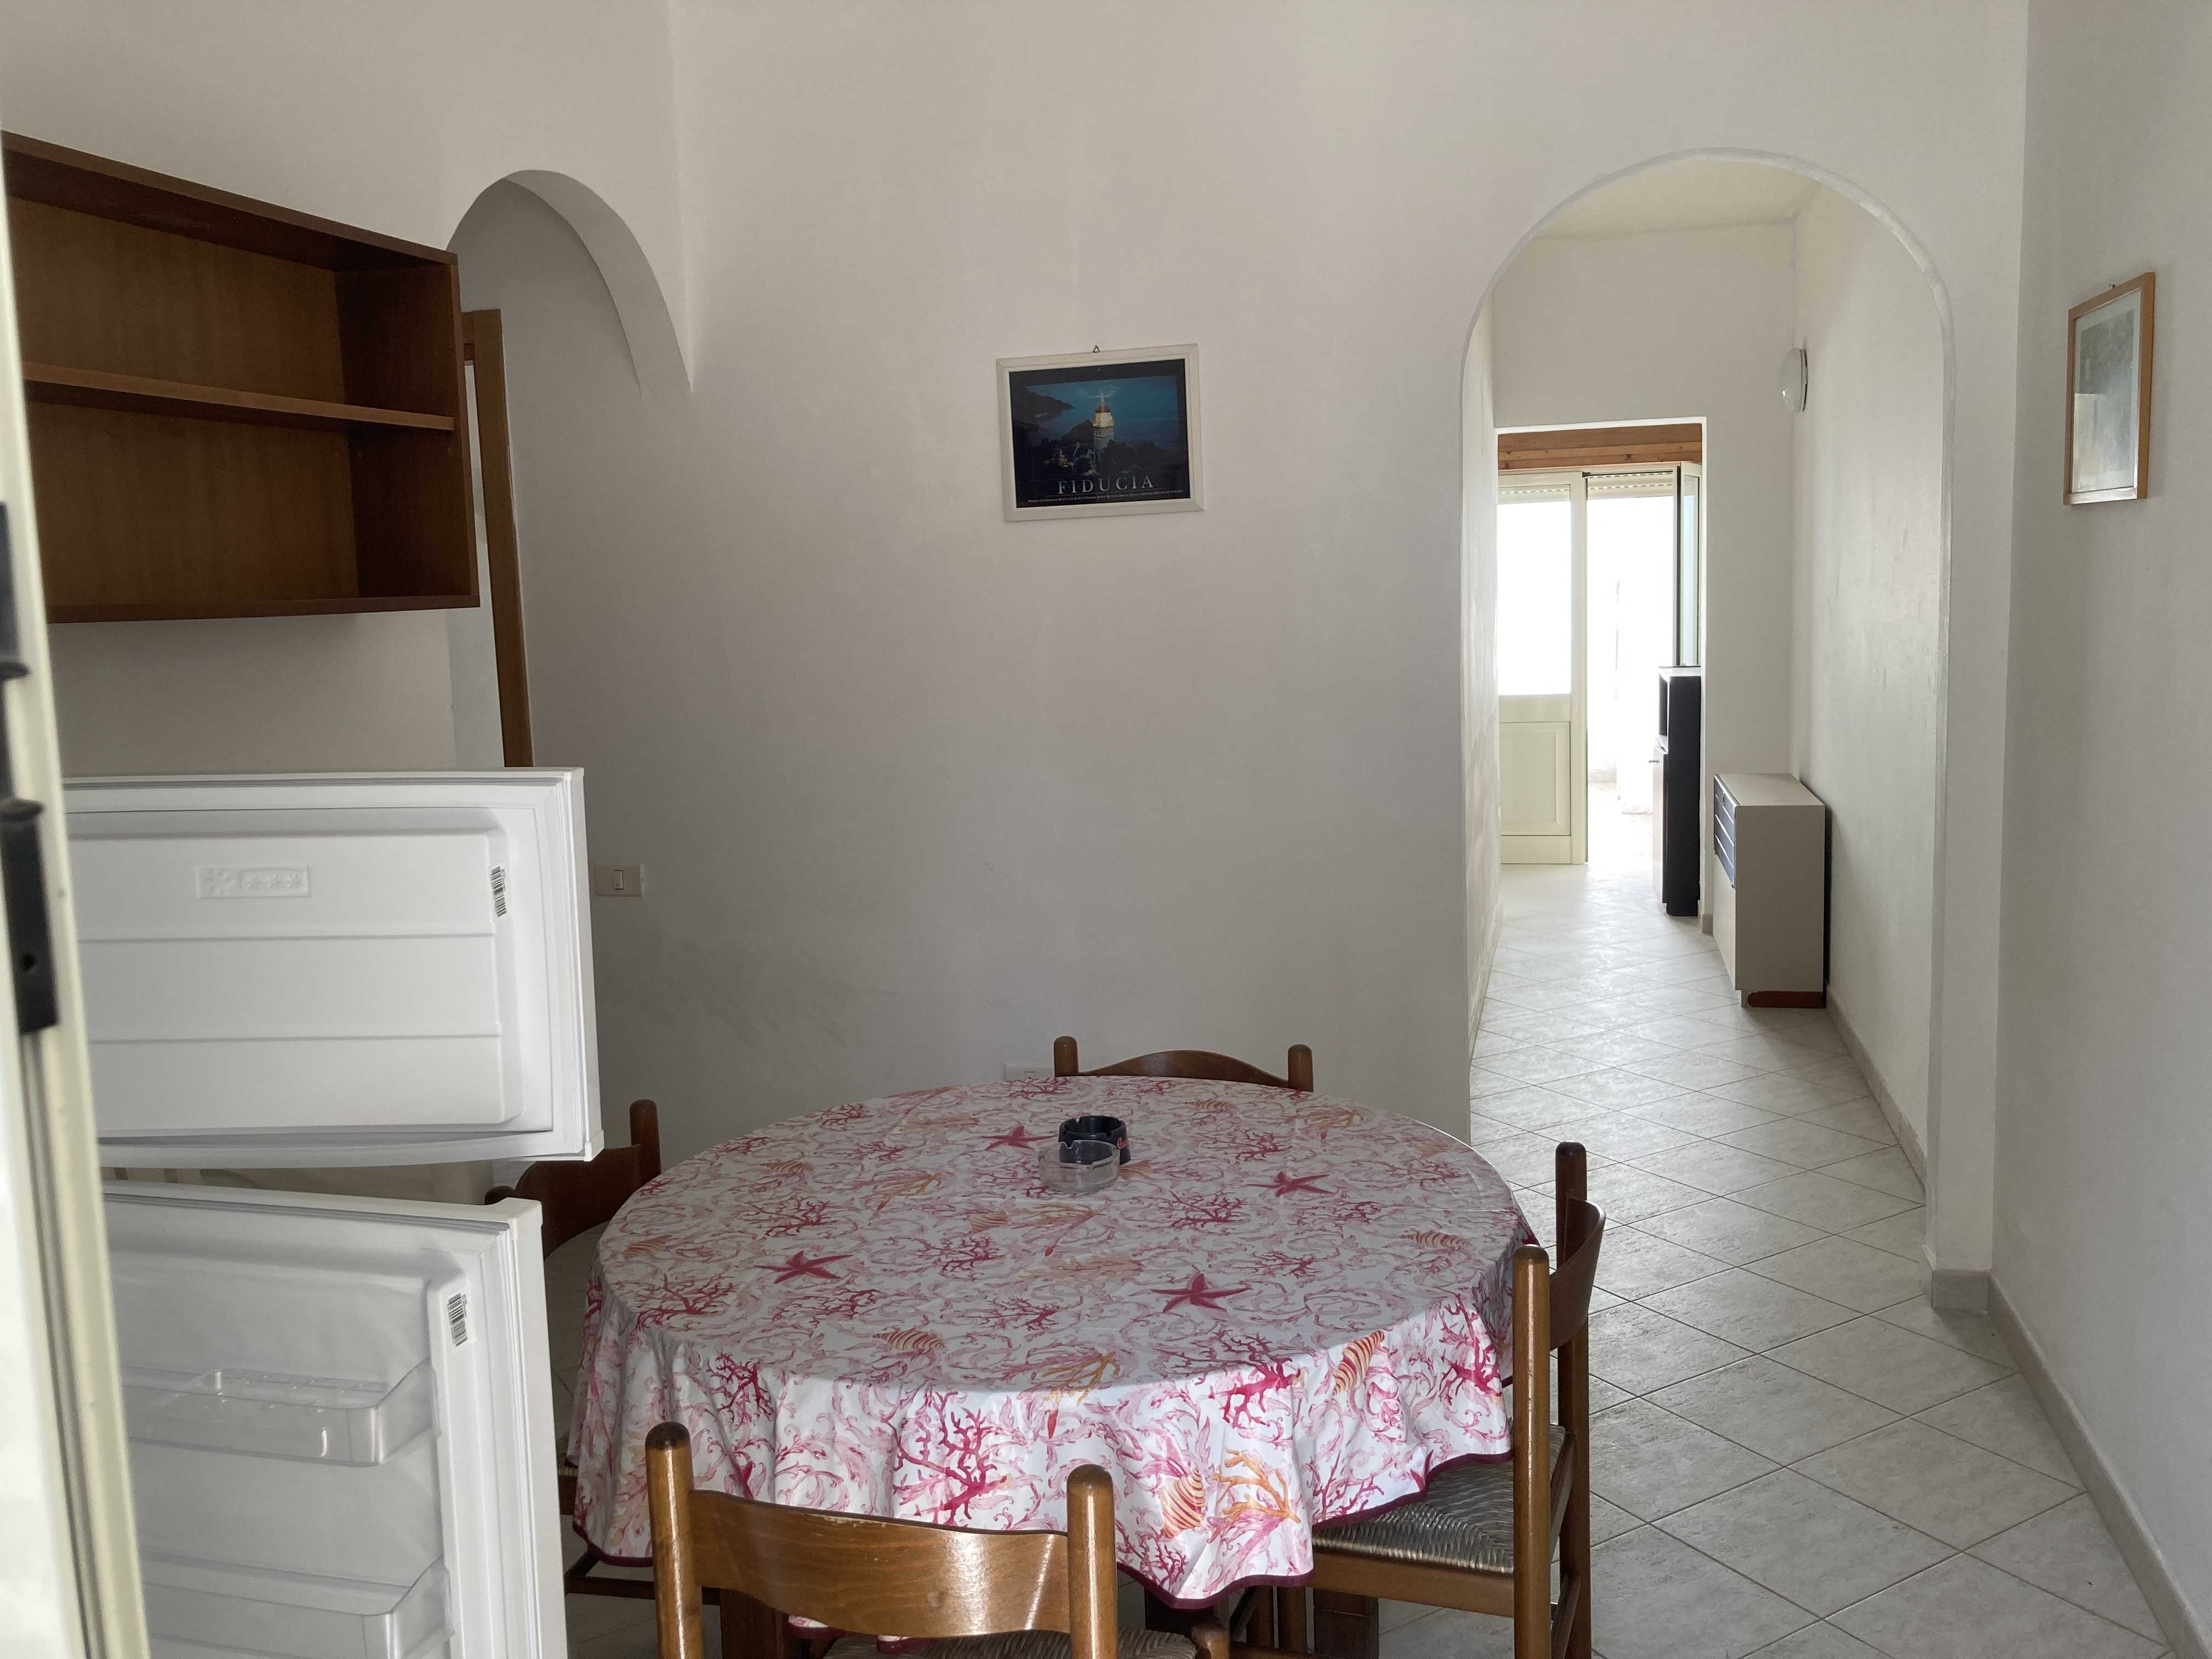 Vendite Salento: Vendita appartamento (Castrignano del Capo) - soggiorno3